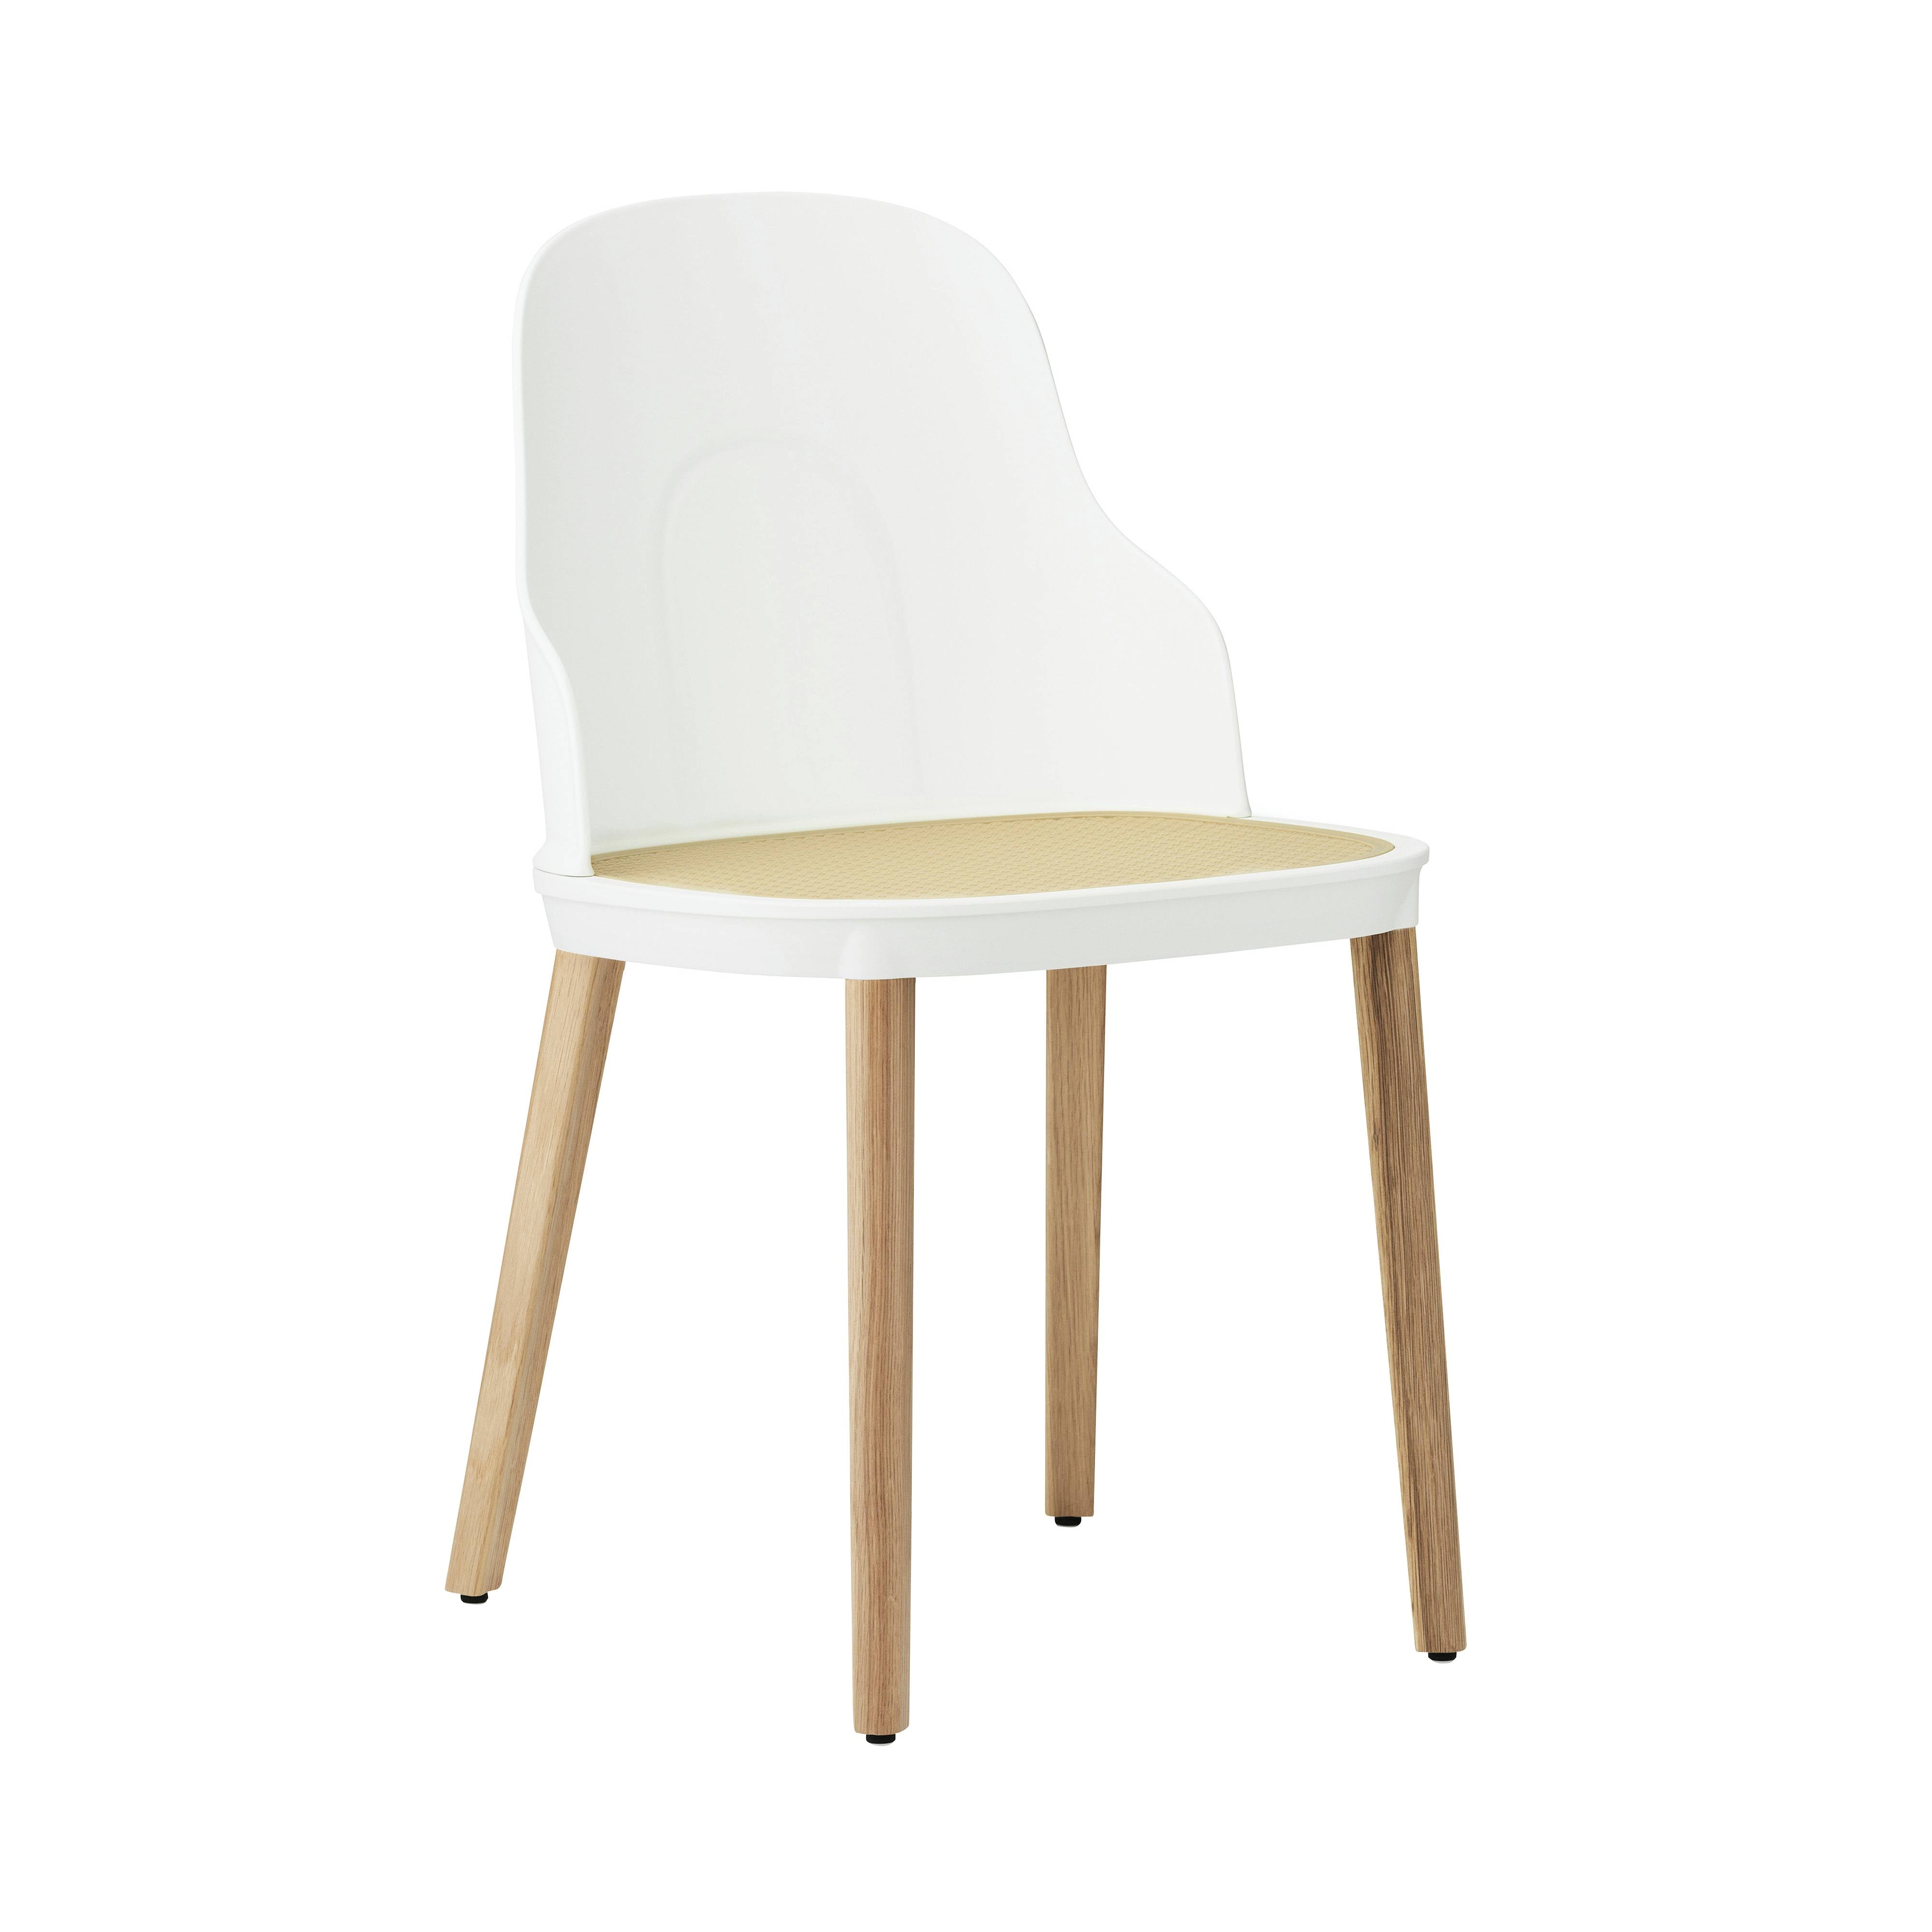 Allez Chair: Molded Wicker + White + Oak